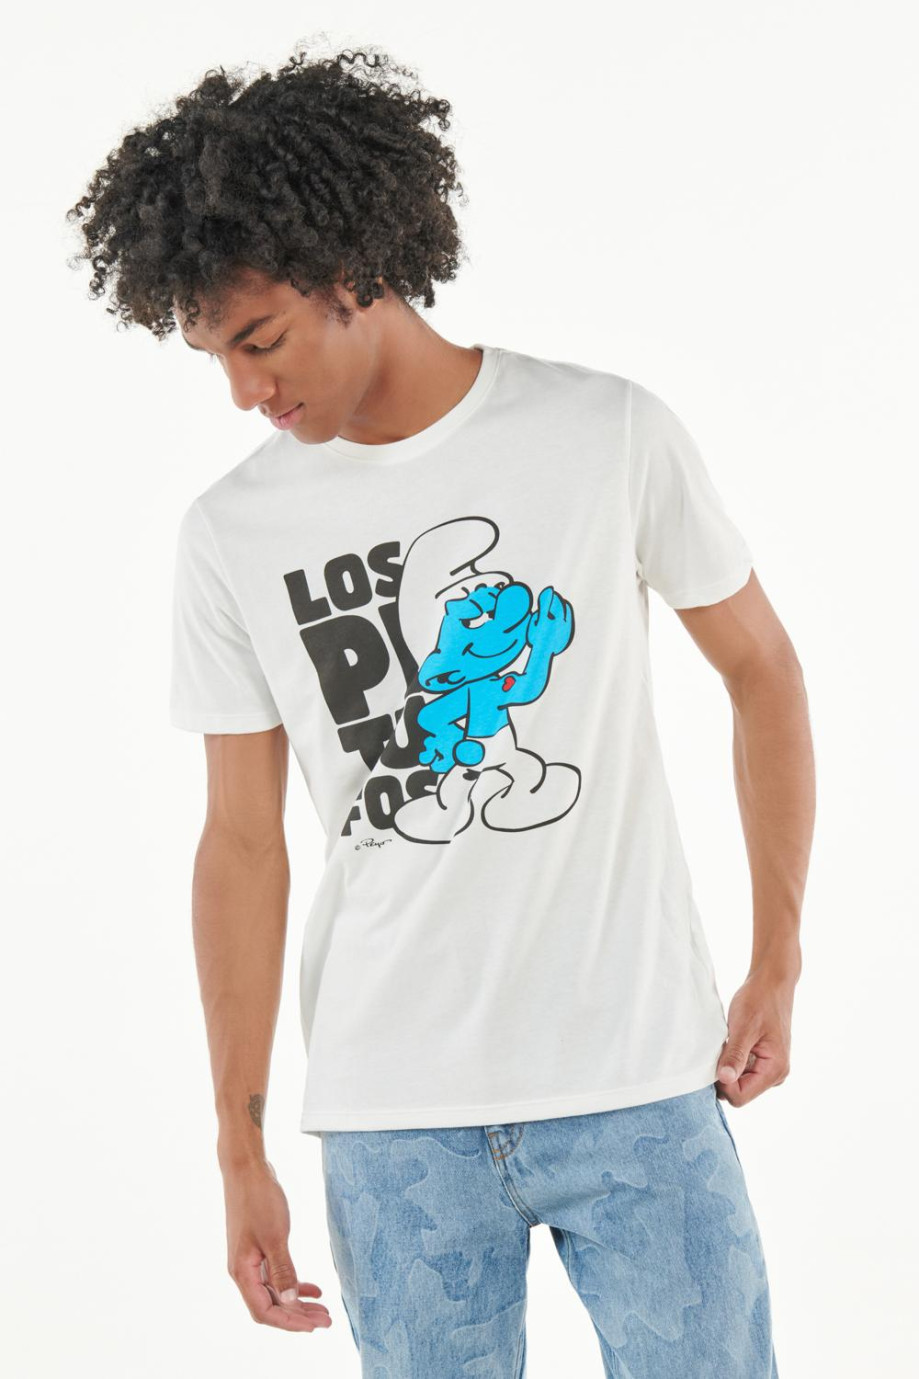 Camiseta manga corta crema con estampado de Los Pitufos